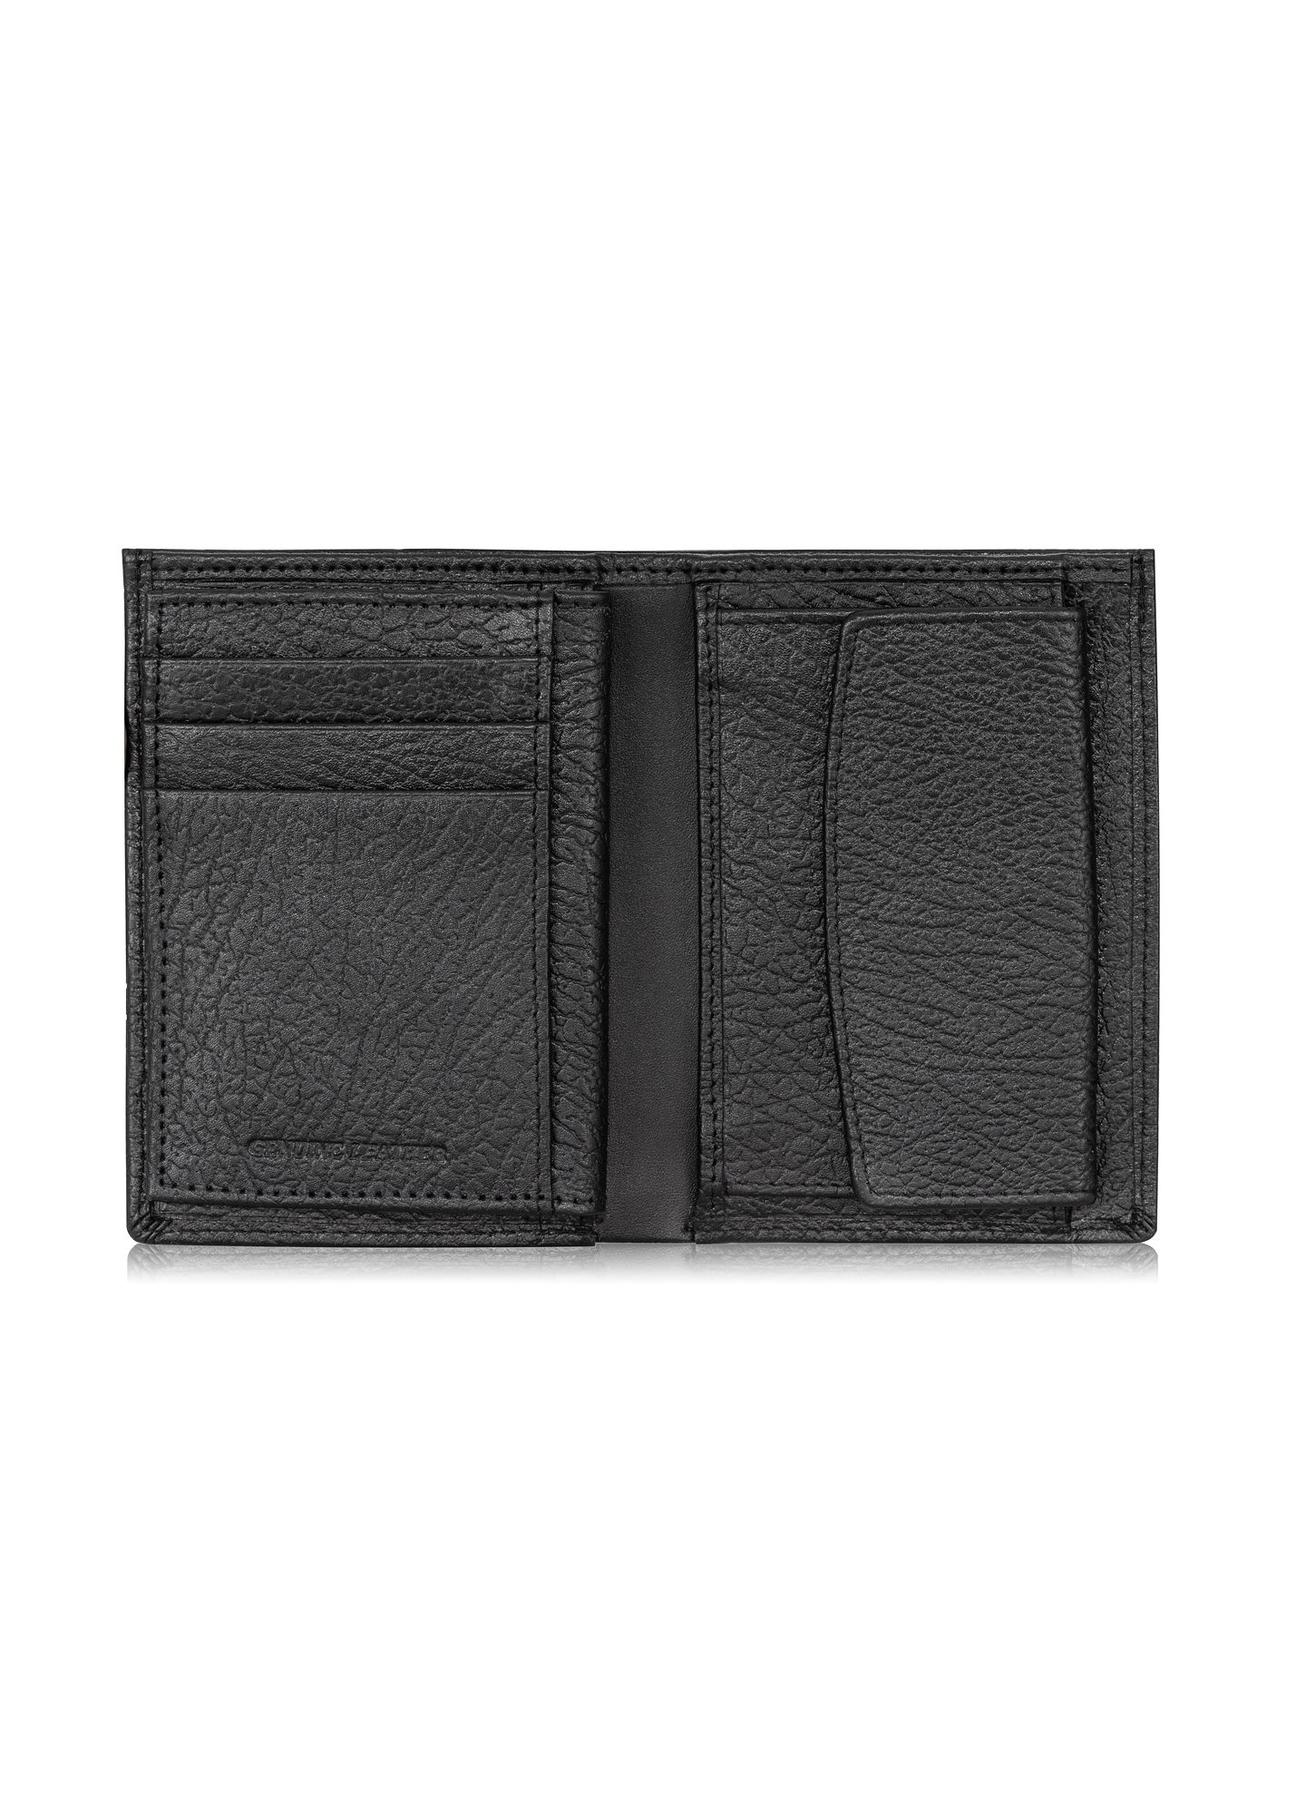 Skórzany groszkowany portfel męski PORMS-0534-99(W24)